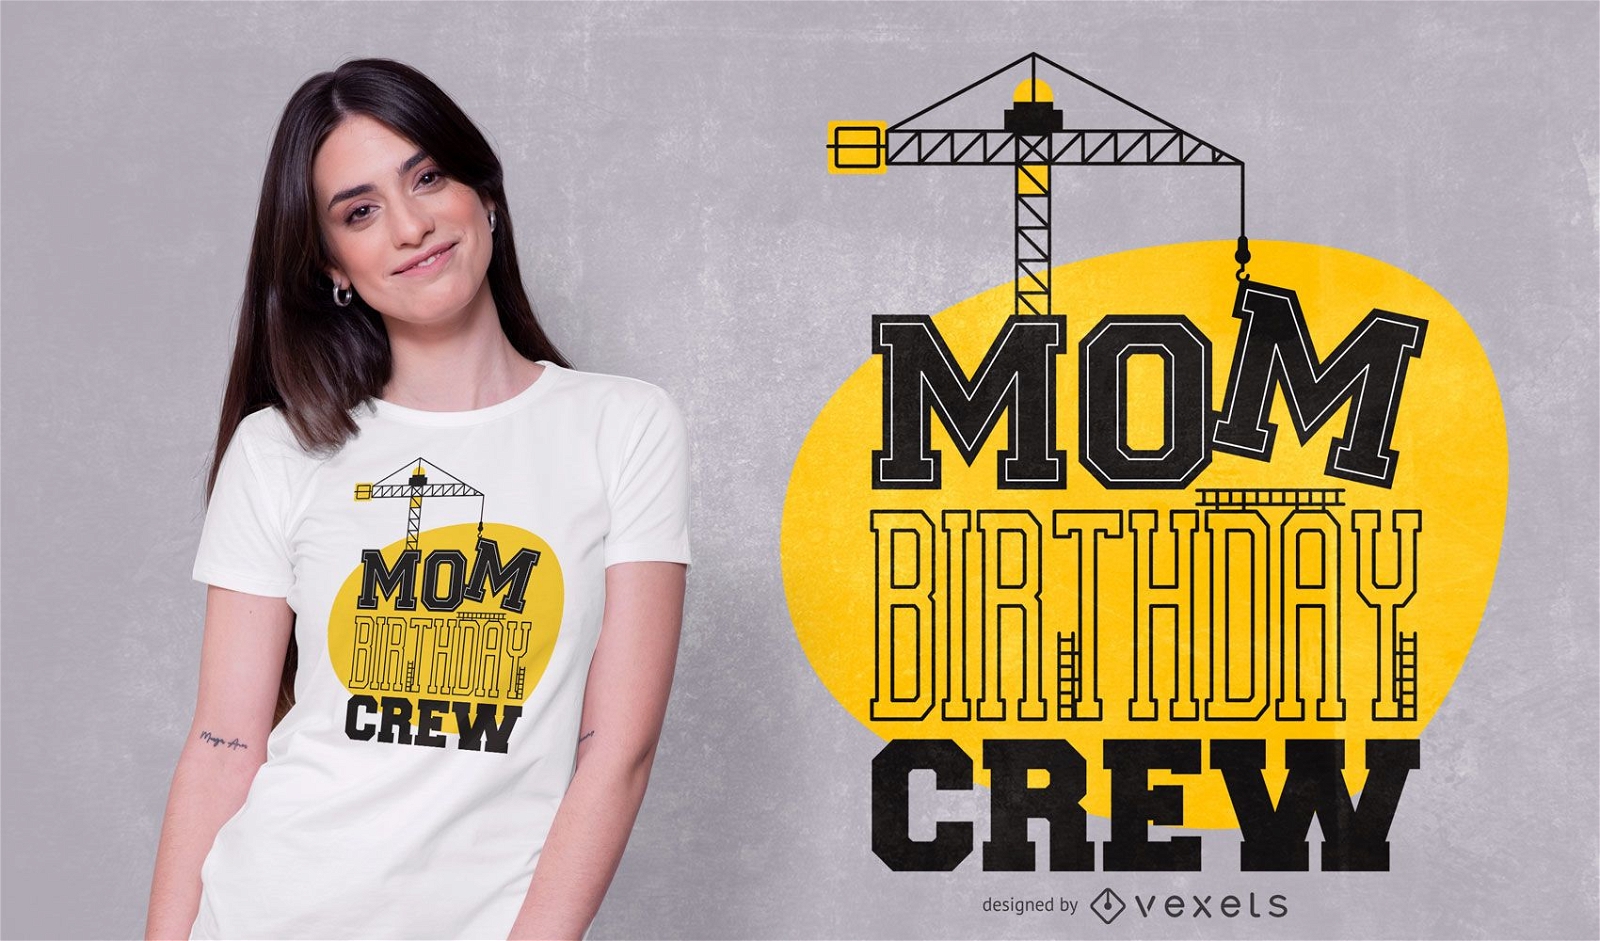 Mutter Geburtstag Crew T-Shirt Design